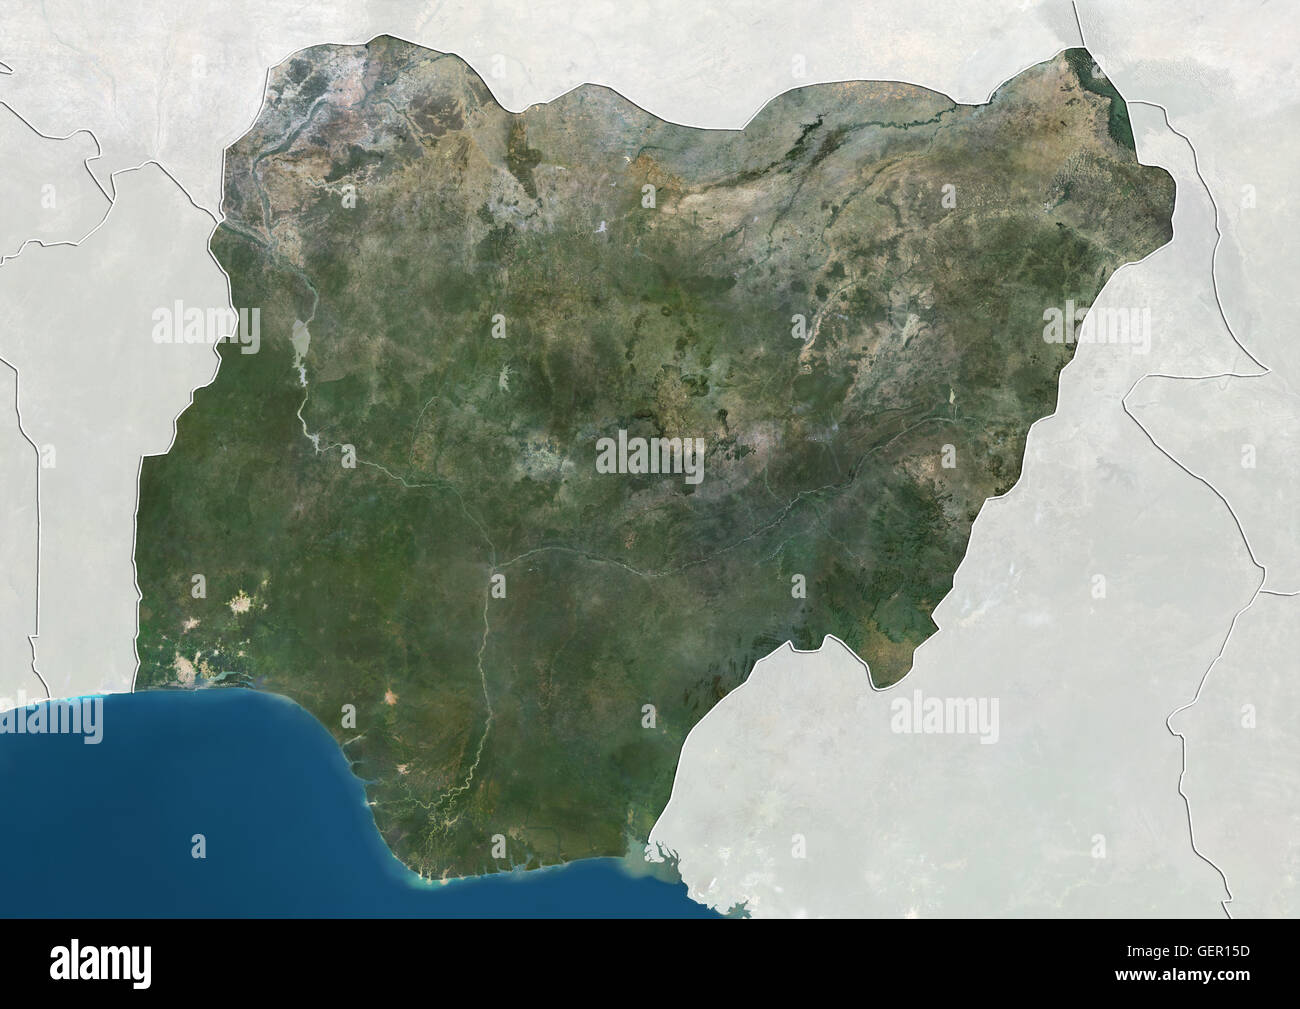 Satellitenansicht von Nigeria (mit Ländergrenzen und Maske). Dieses Bild wurde aus Daten von Landsat-Satelliten erworben erstellt. Stockfoto